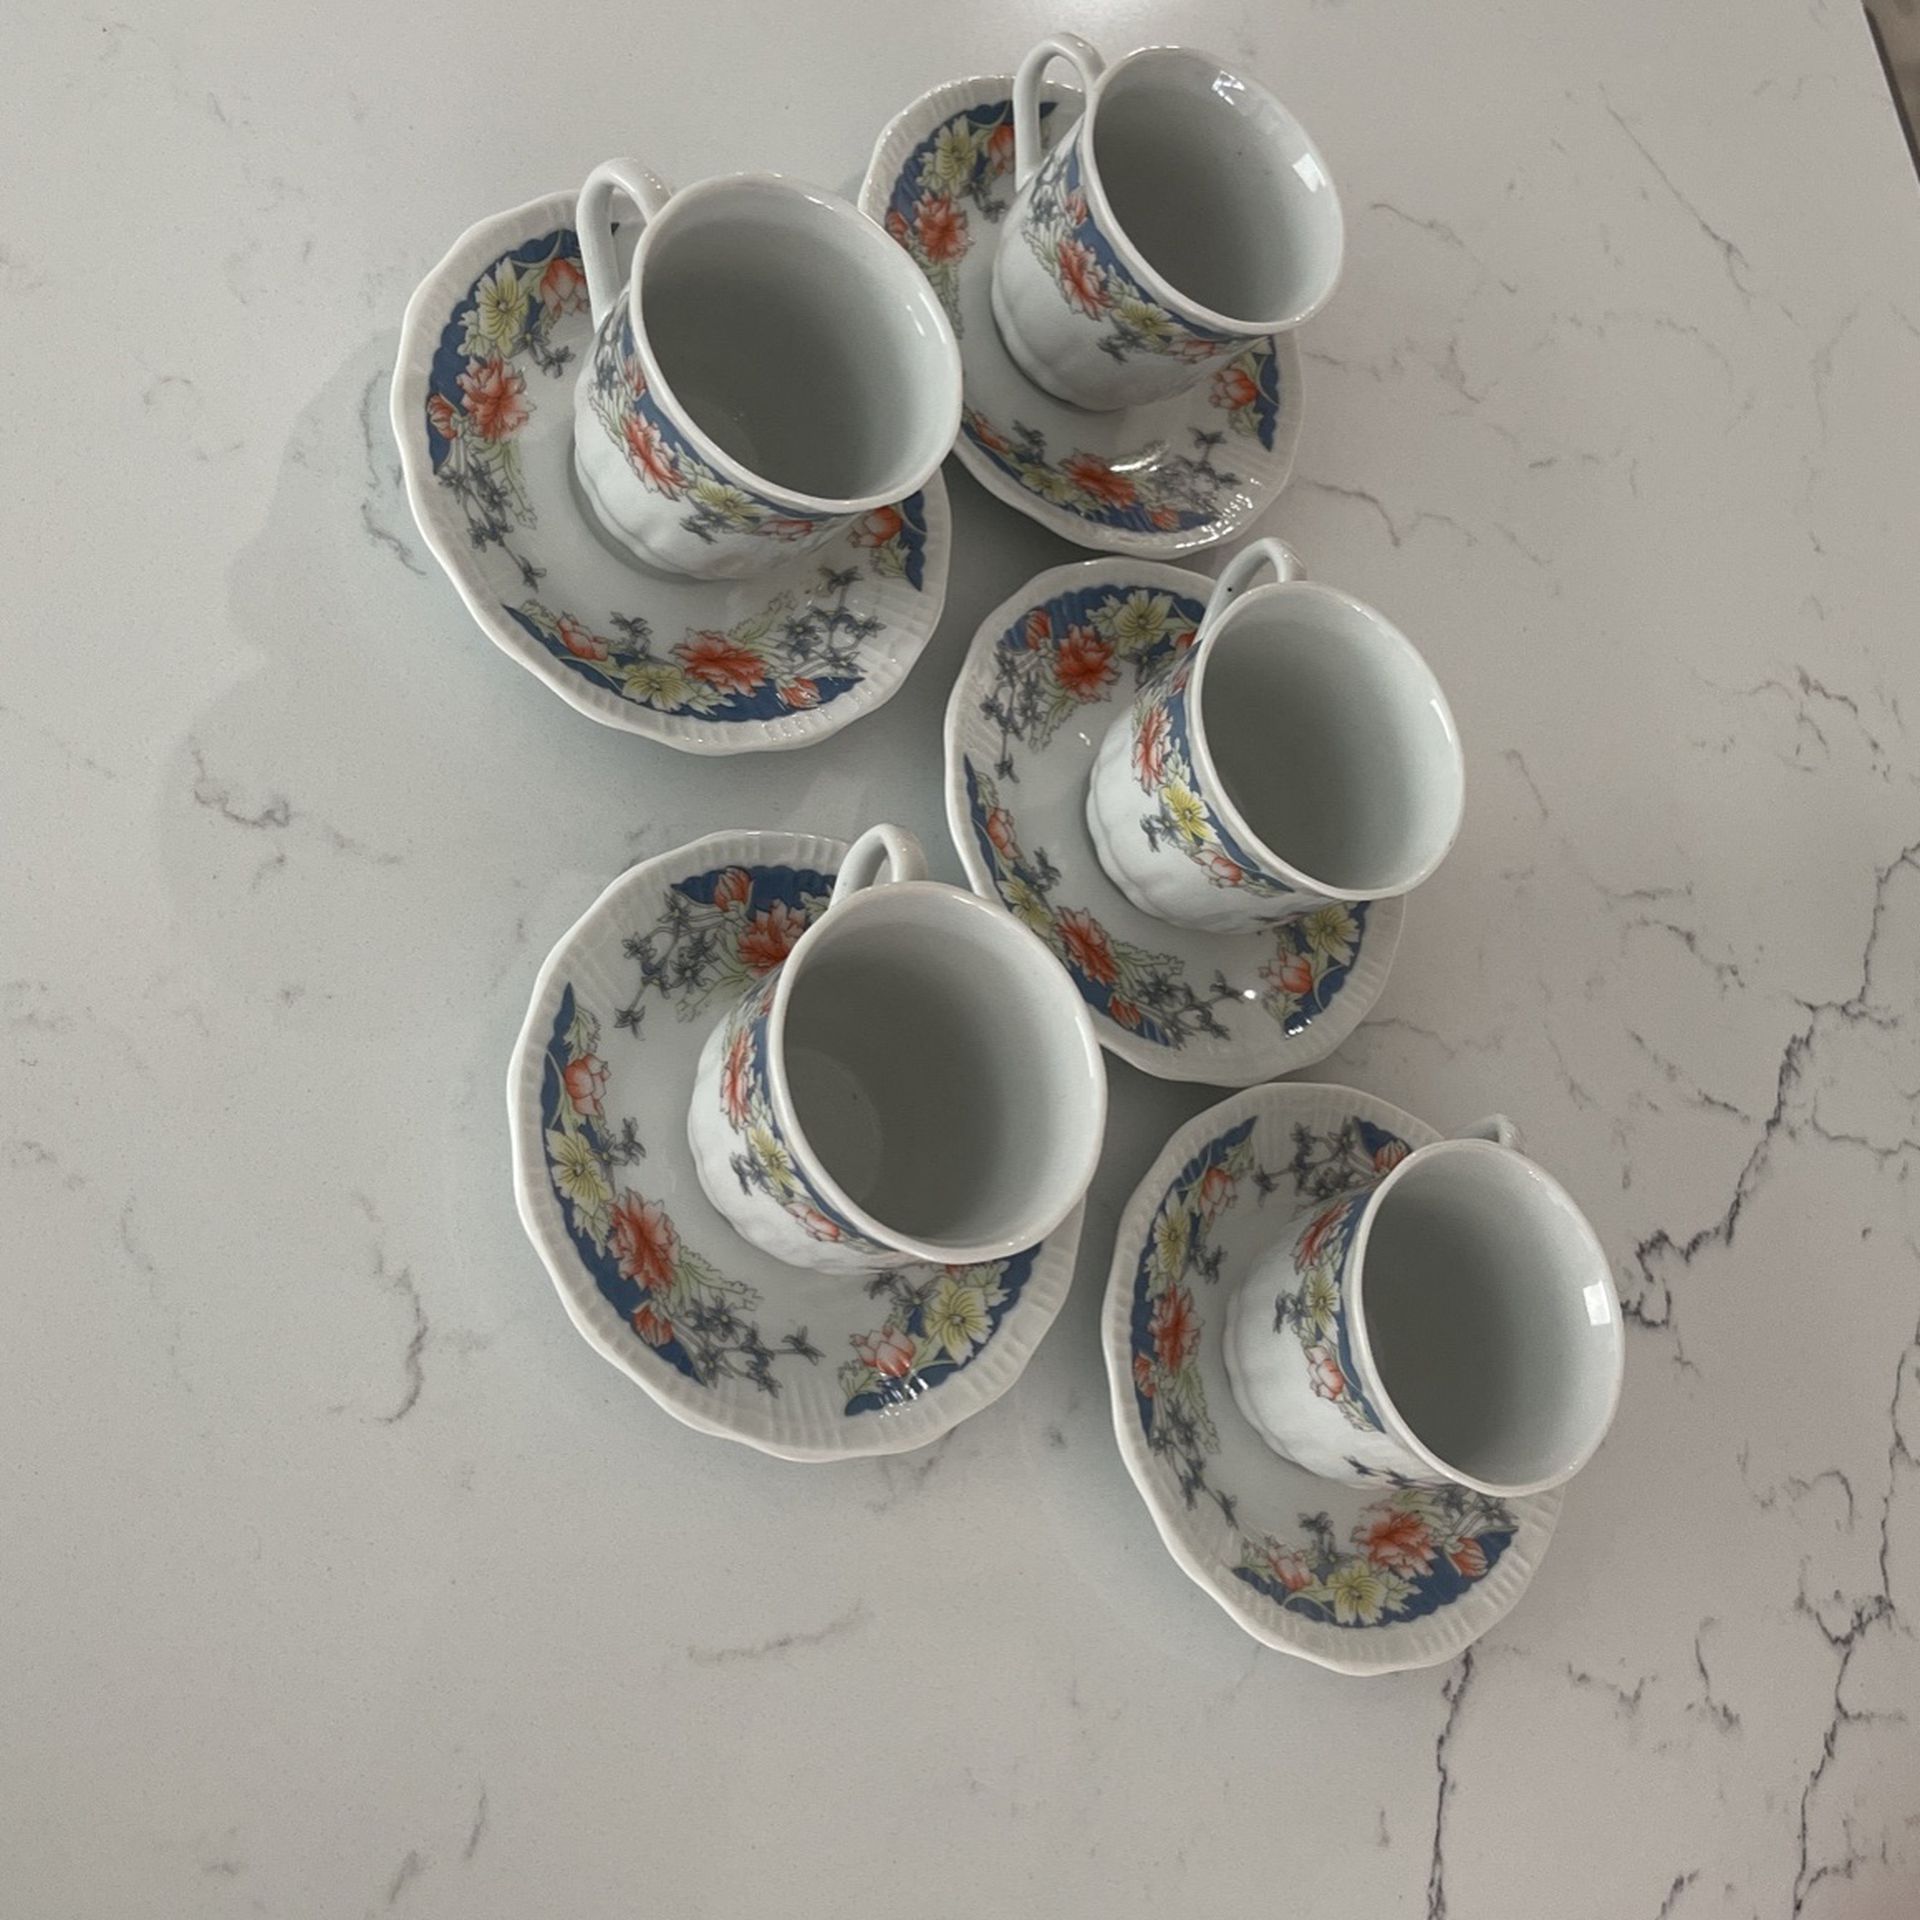 Turkish Coffee Cups